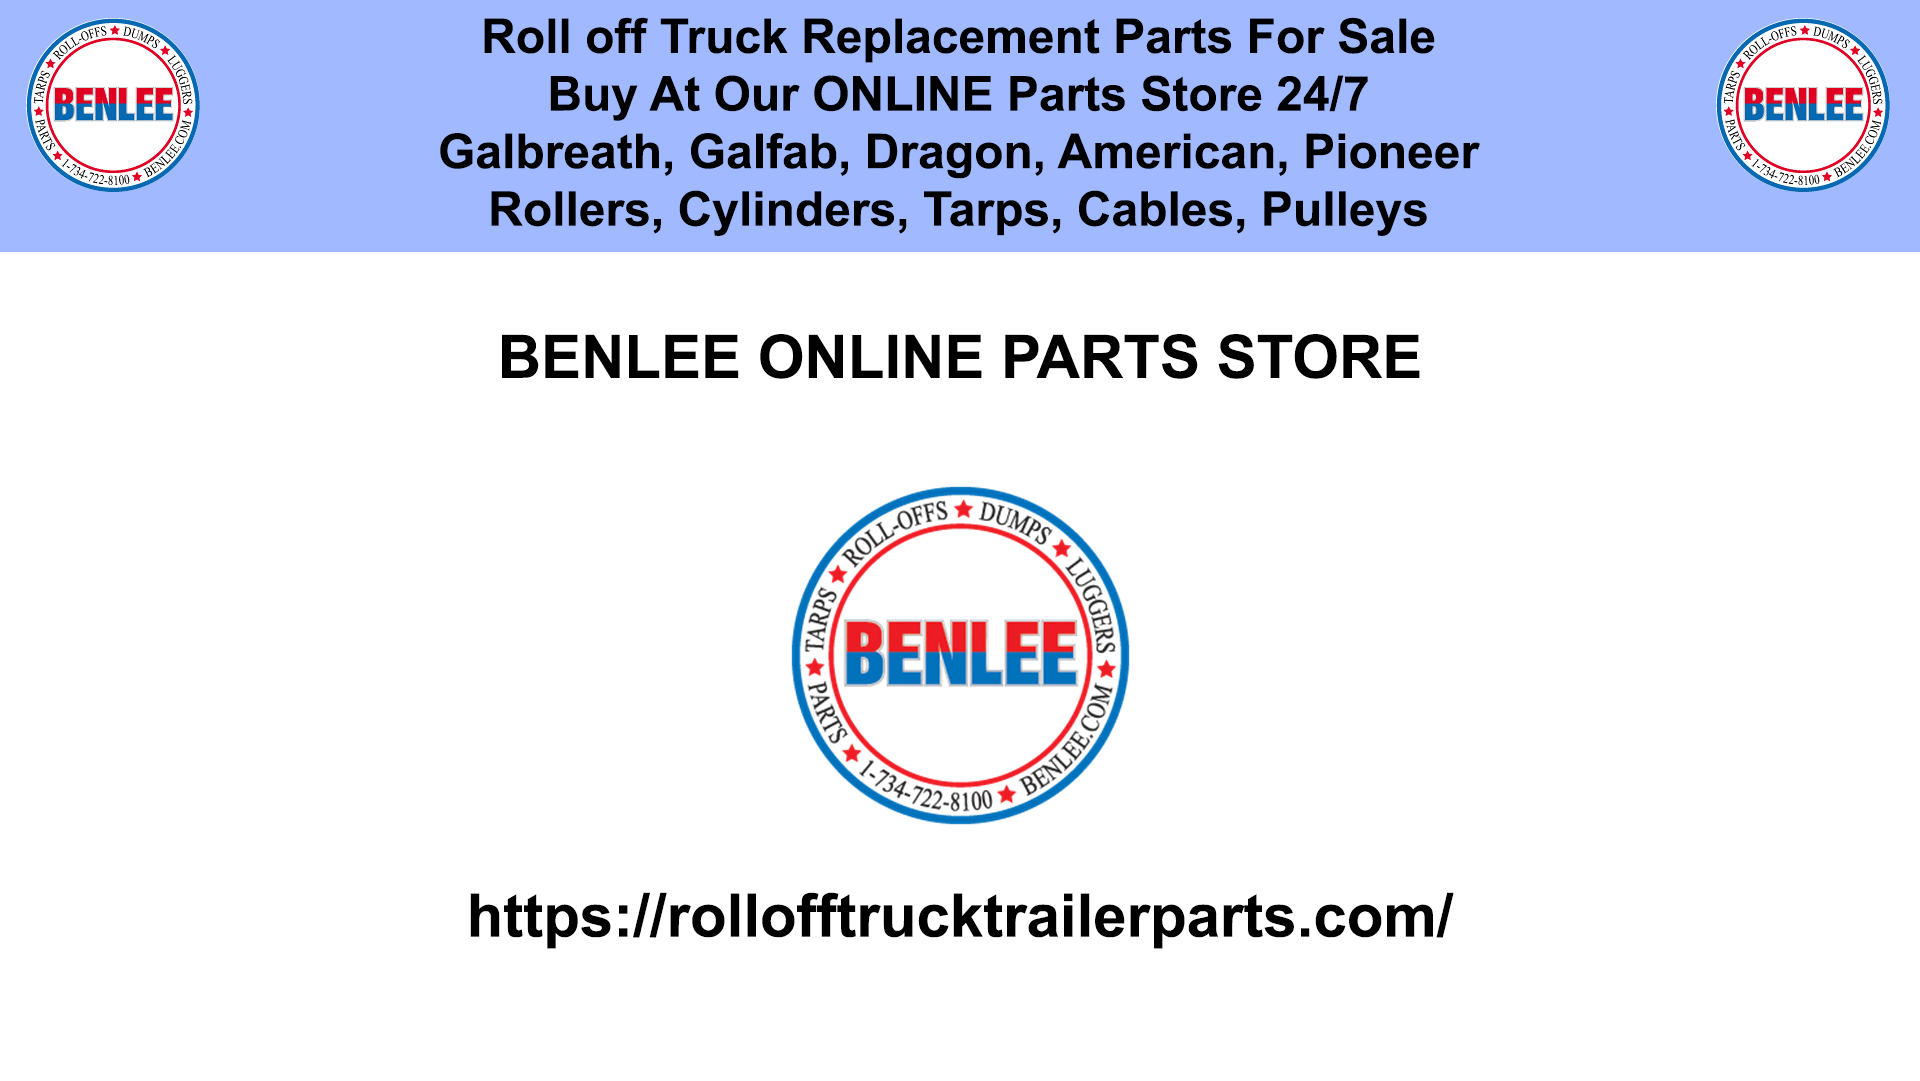 BENLEE Parts Store